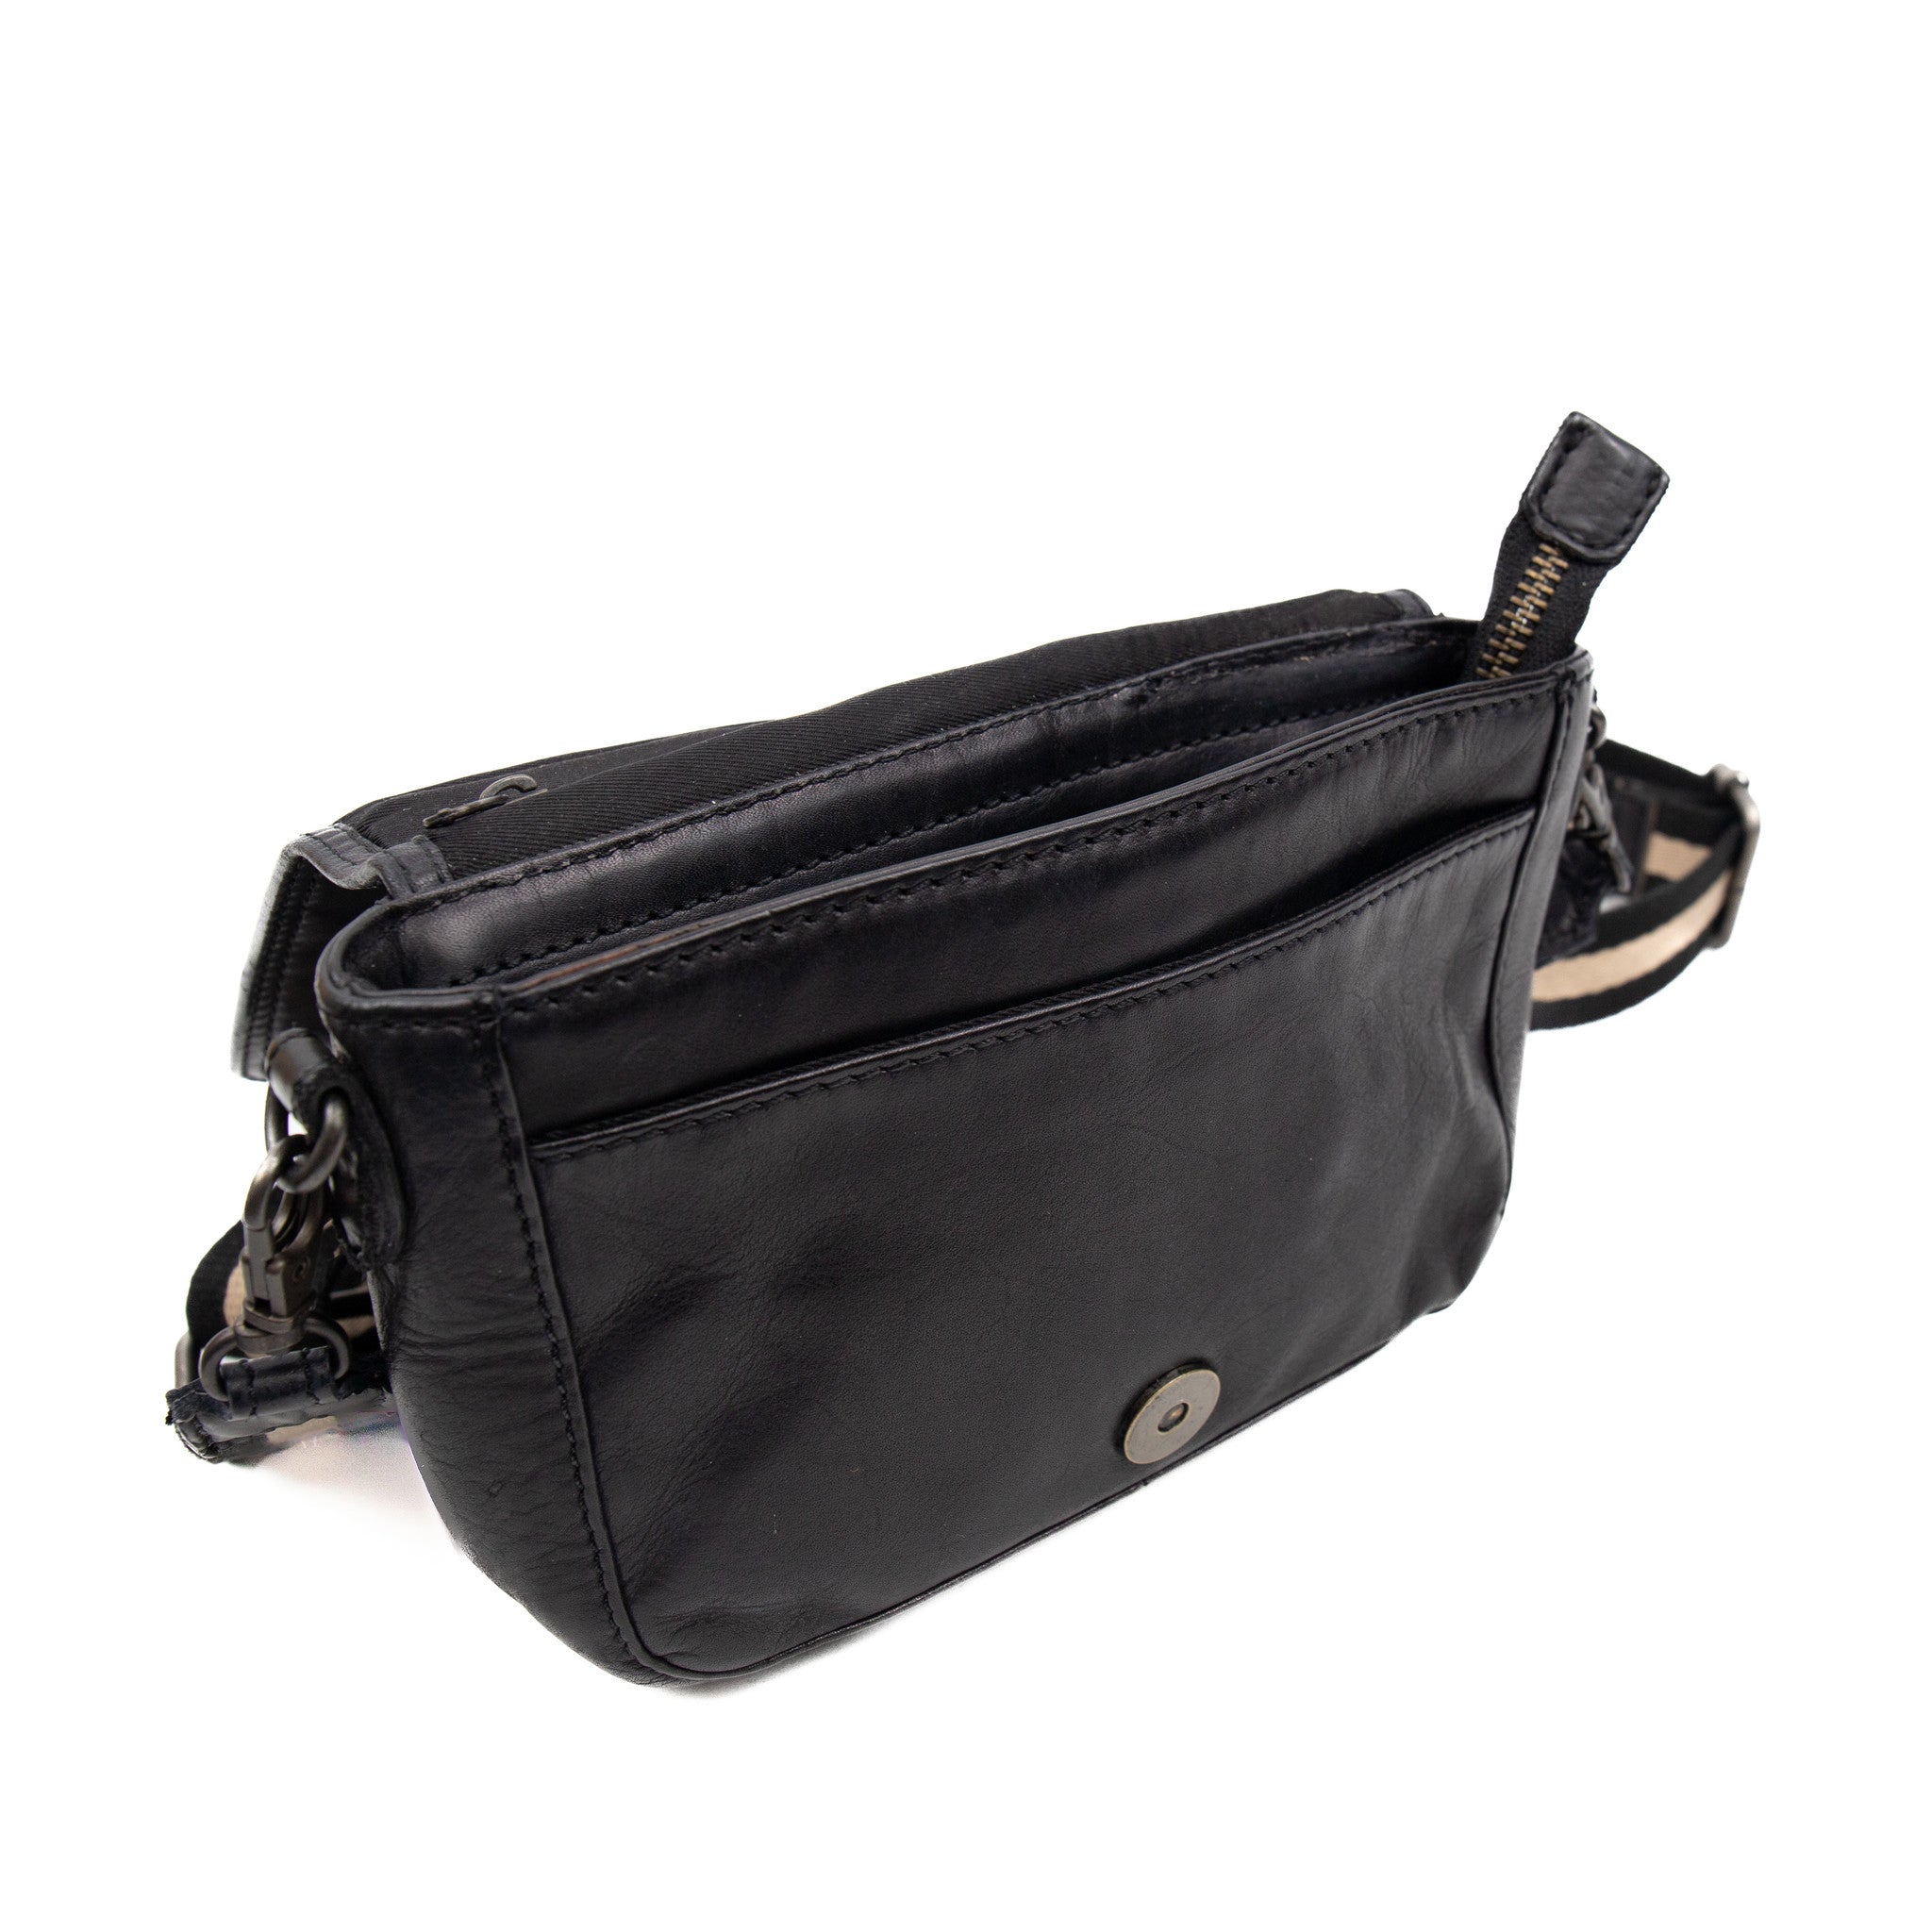 Shoulder bag 'Giulia' black - CL 41354